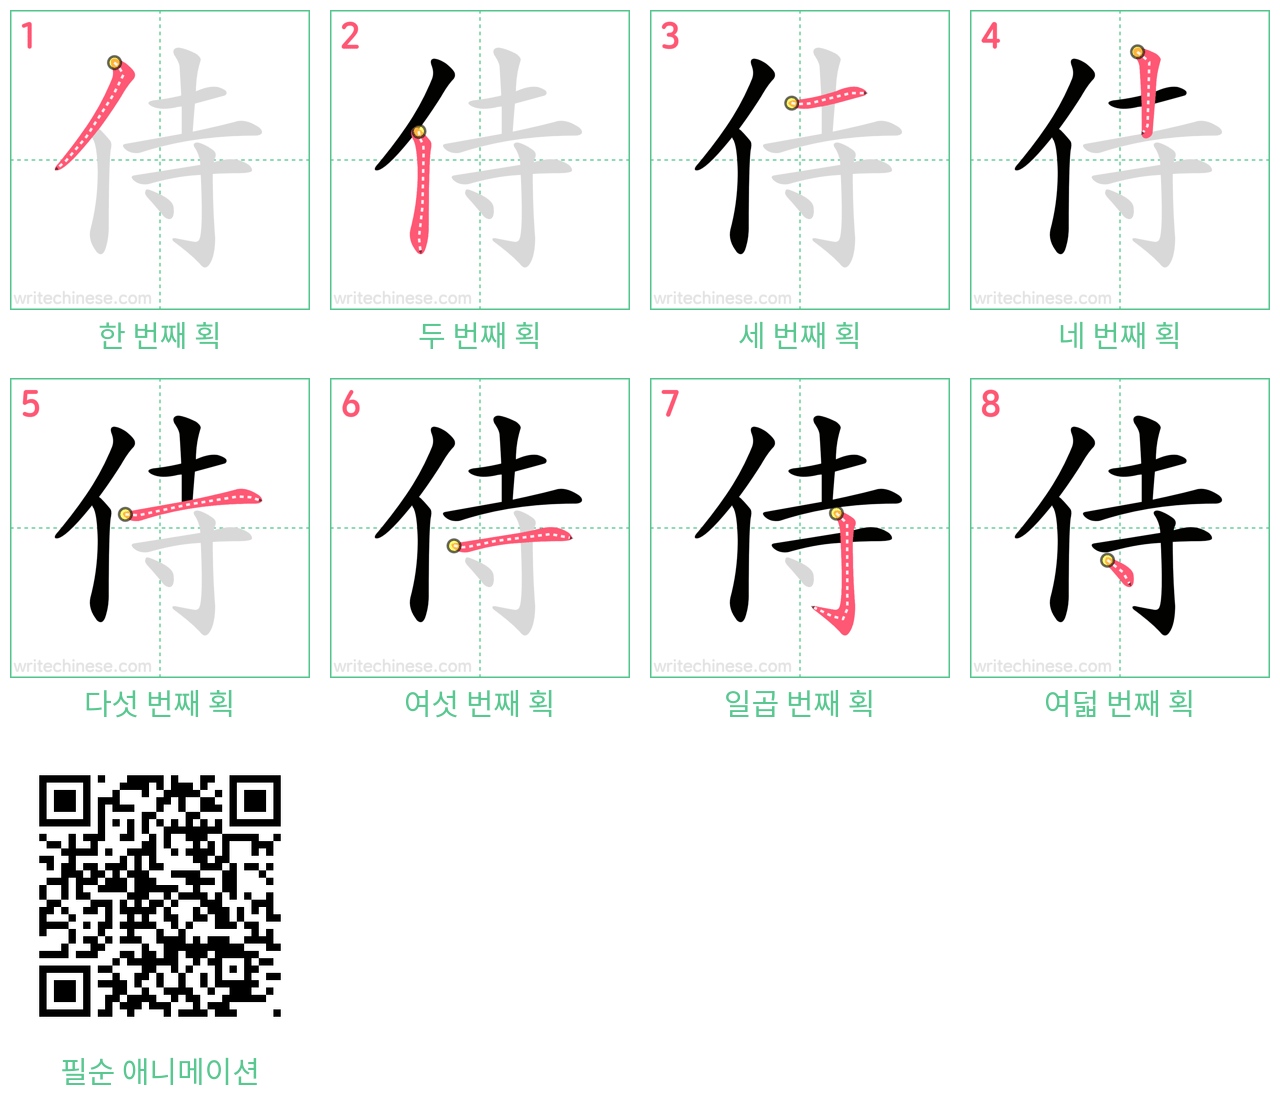 侍 step-by-step stroke order diagrams